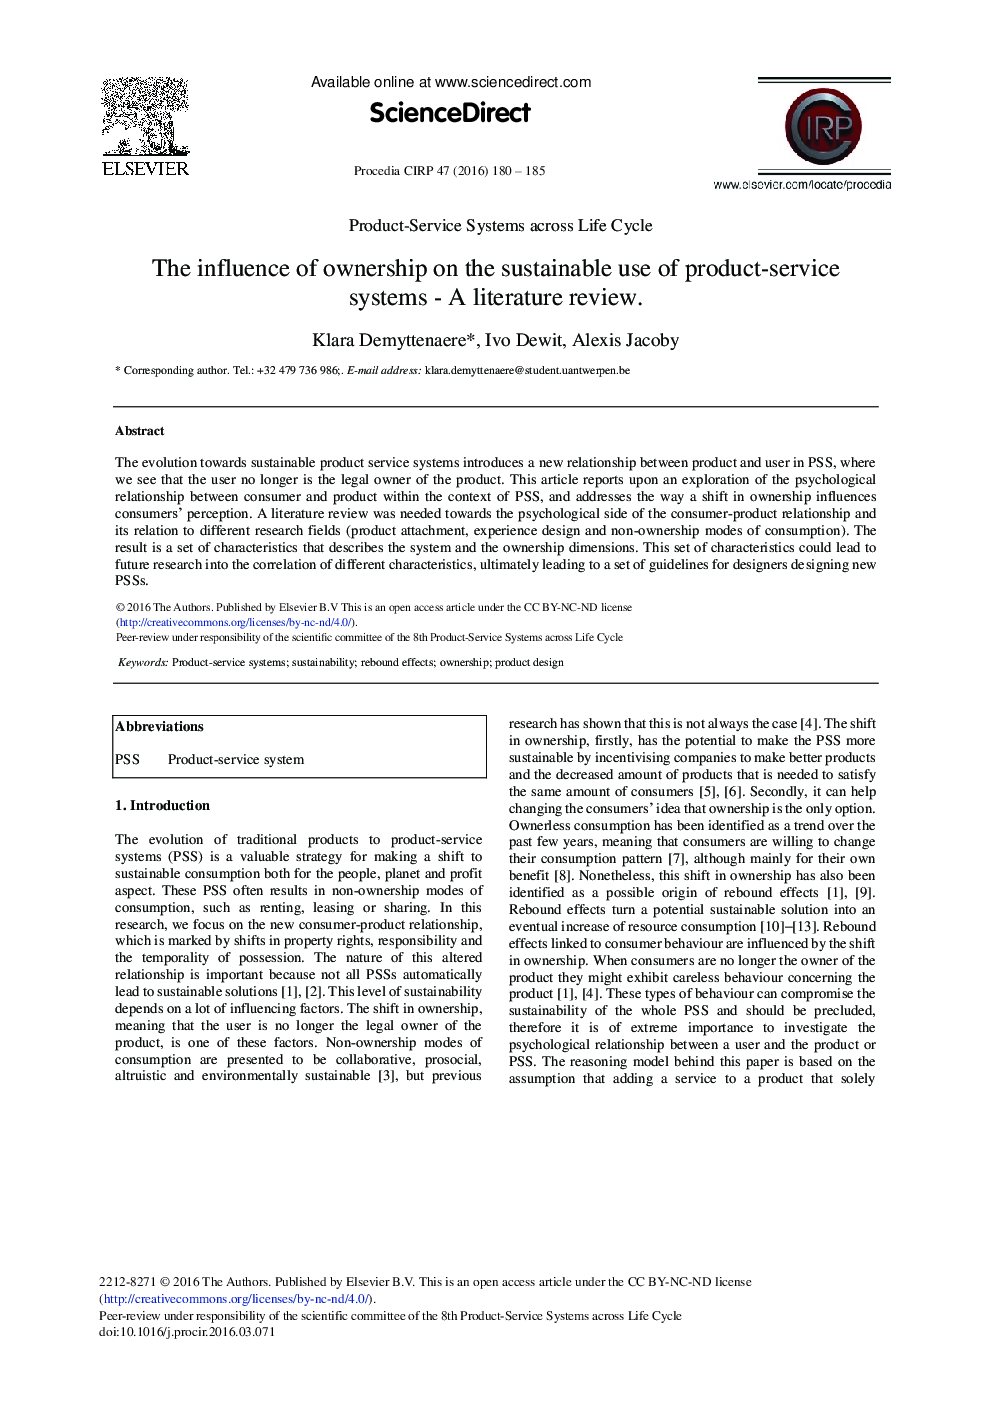 تأثیر مالکیت بر استفاده پایدار از سیستم های سرویس محصول - بررسی ادبیات 